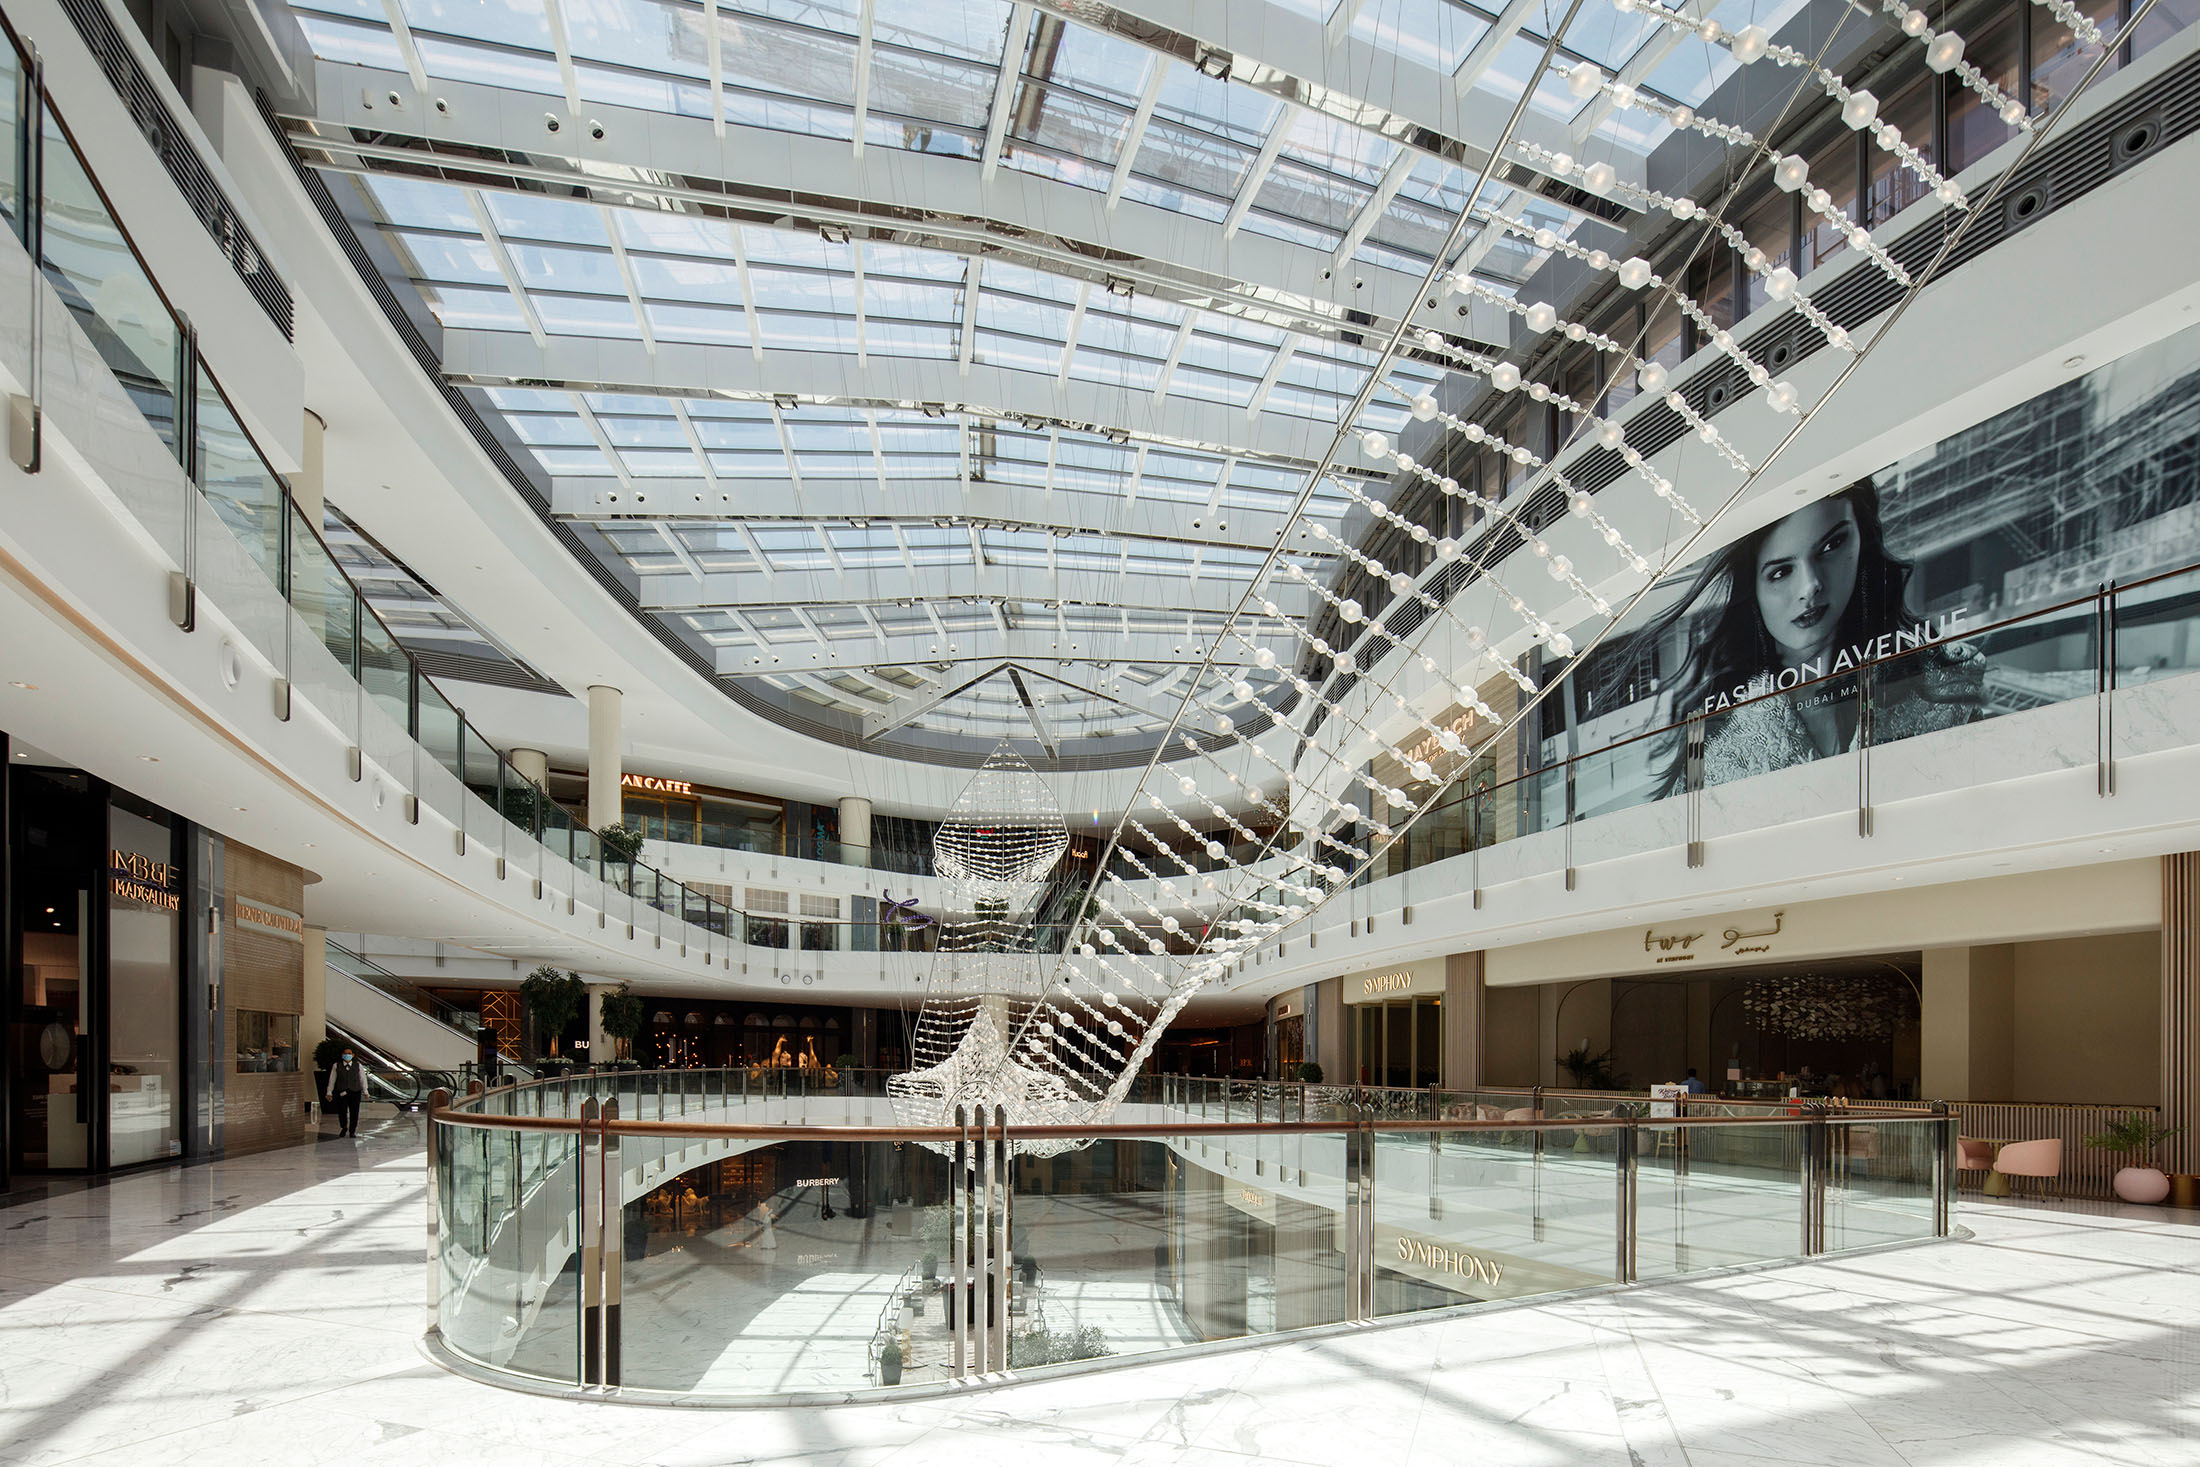 File:Dubai mall fashion avenue.JPG - Wikipedia